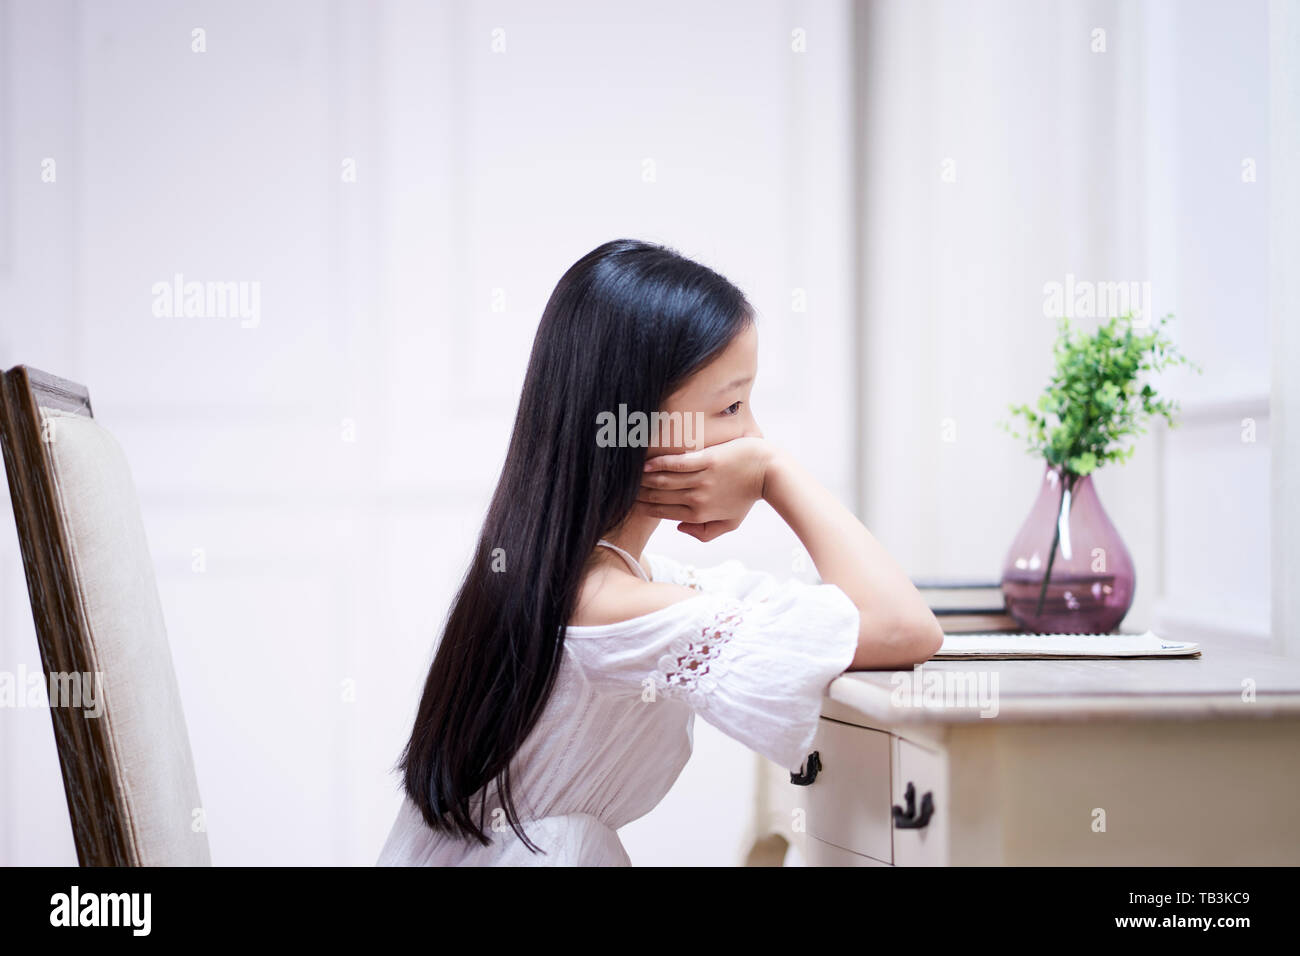 Traurigen kleinen asiatischen Mädchen mit langen schwarzen Haaren sitzen am Schreibtisch in Ihrem Zimmer Denken mit der Hand am Kinn Stockfoto